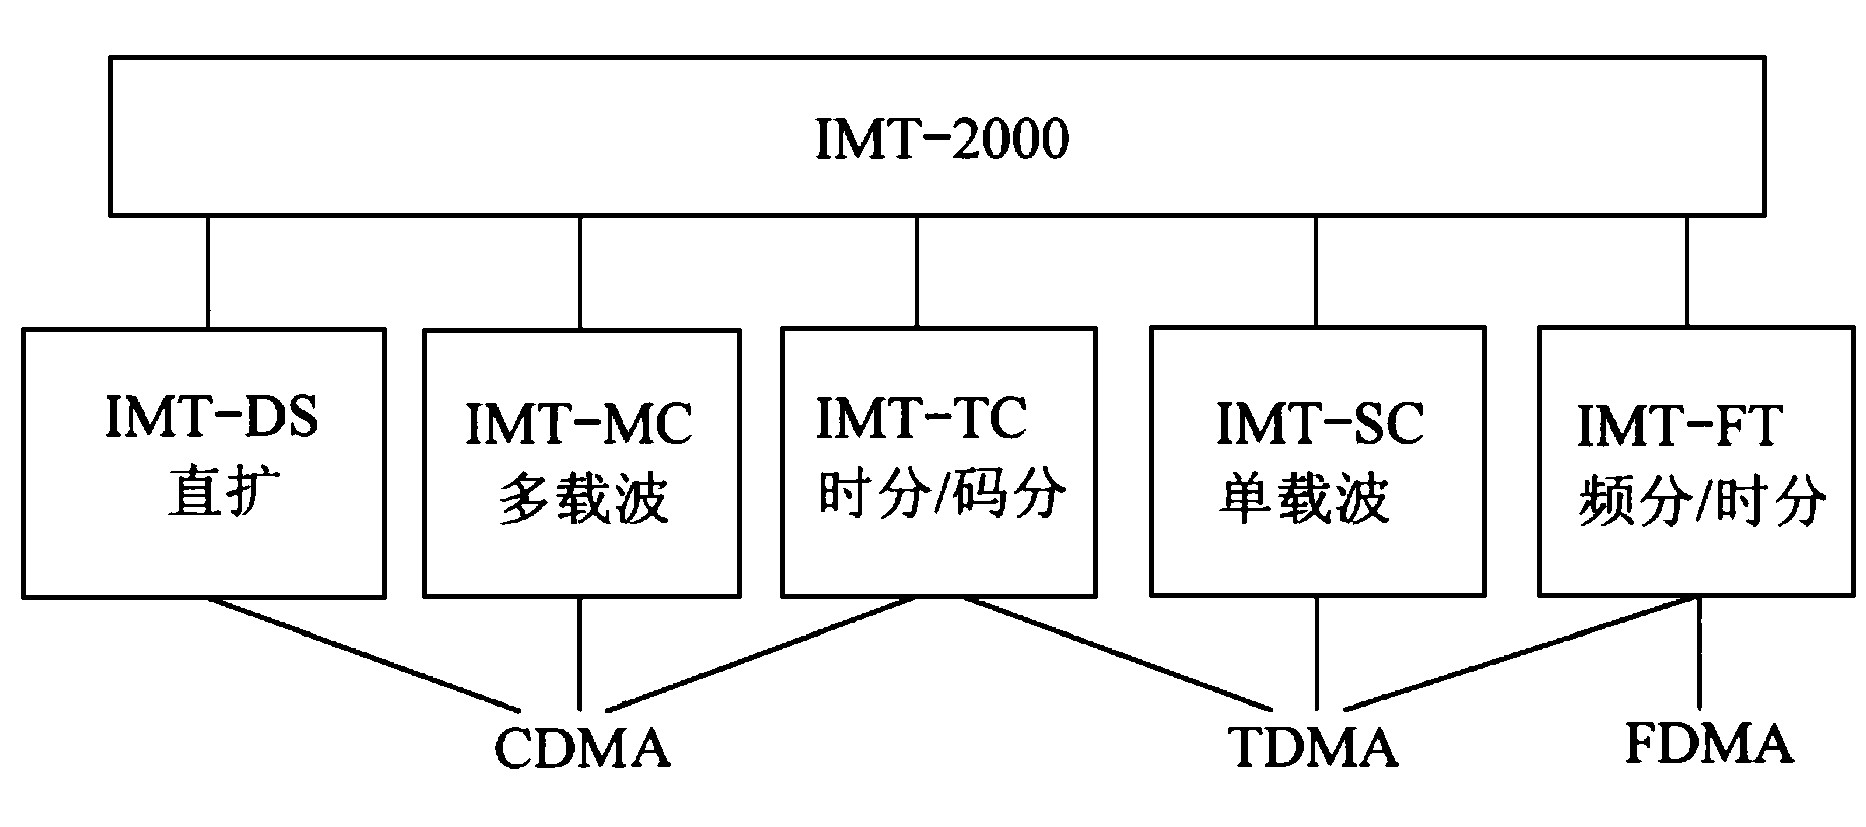 图2 IMT-2000地面无线接口标准